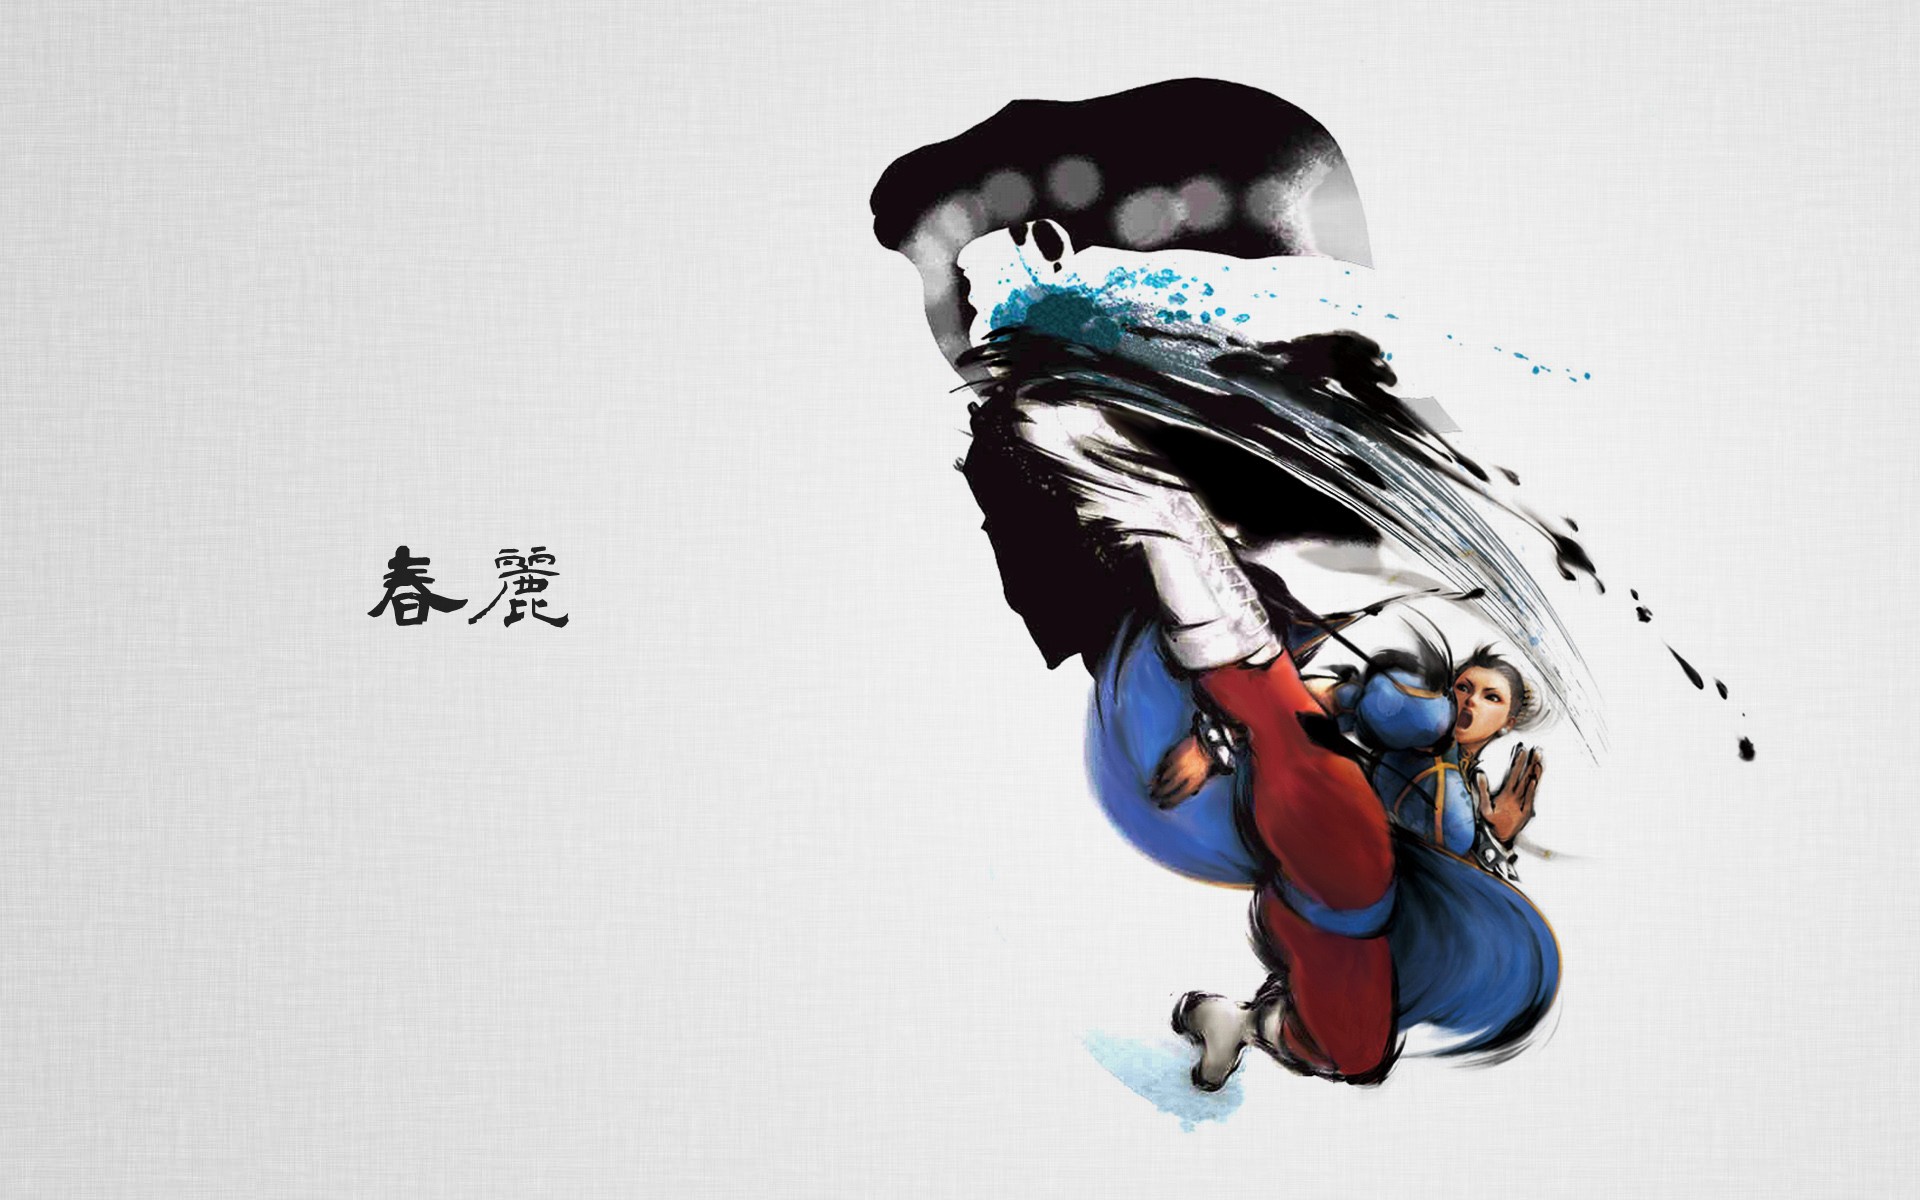 Chun Li Street Fighter Wallpaper